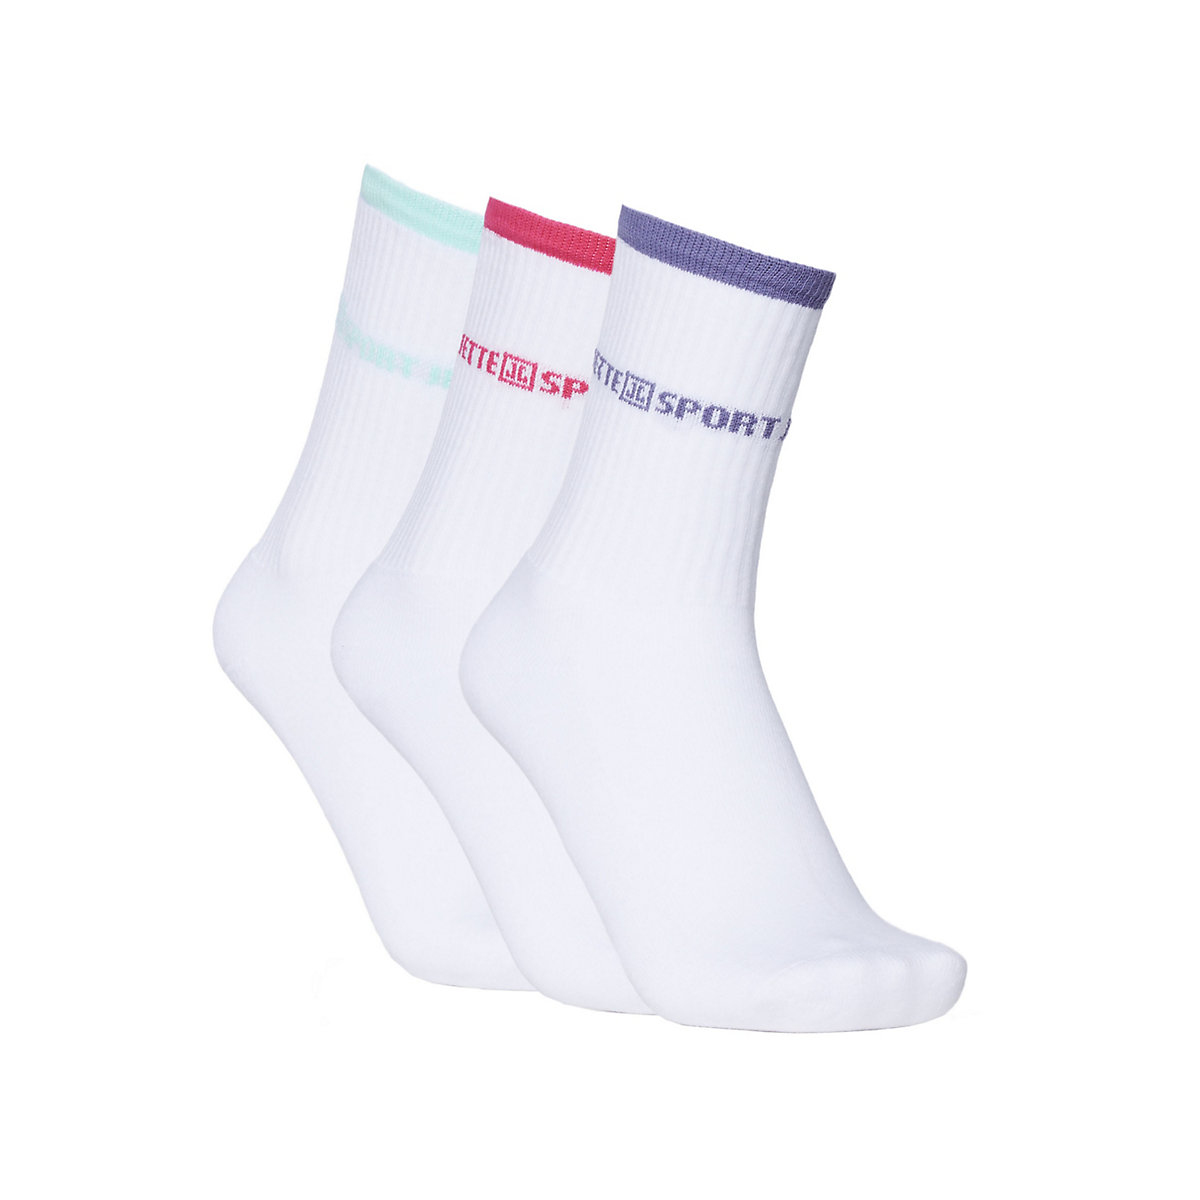 JETTE SPORT Socken Damen 3er-Pack Socken pink